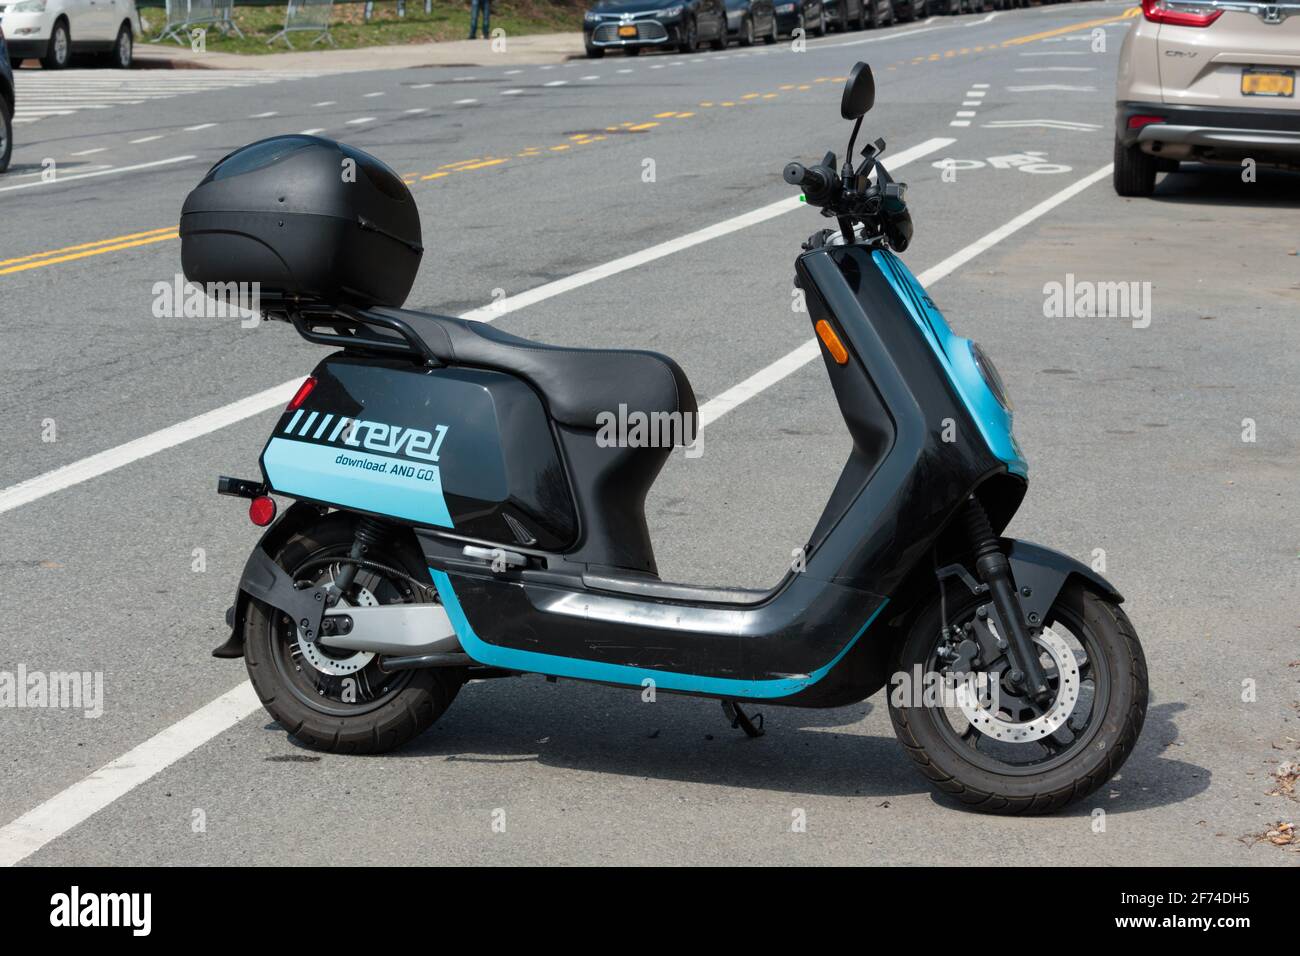 Moped rental immagini e fotografie stock ad alta risoluzione - Alamy